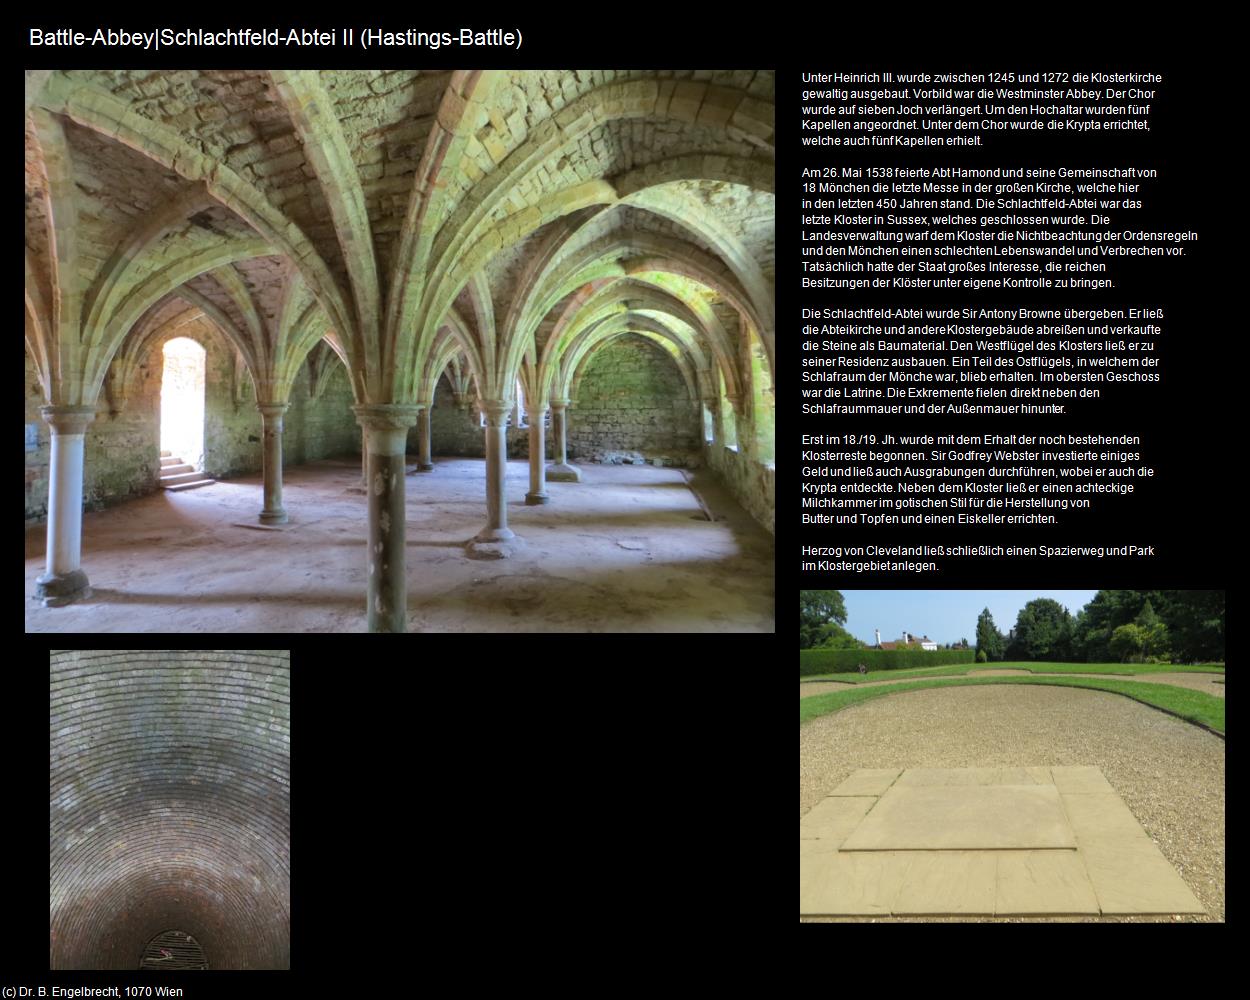 Battle-Abbey|Schlachtfeld-Abtei II (Battle bei Hastings, England) in Kulturatlas-ENGLAND und WALES